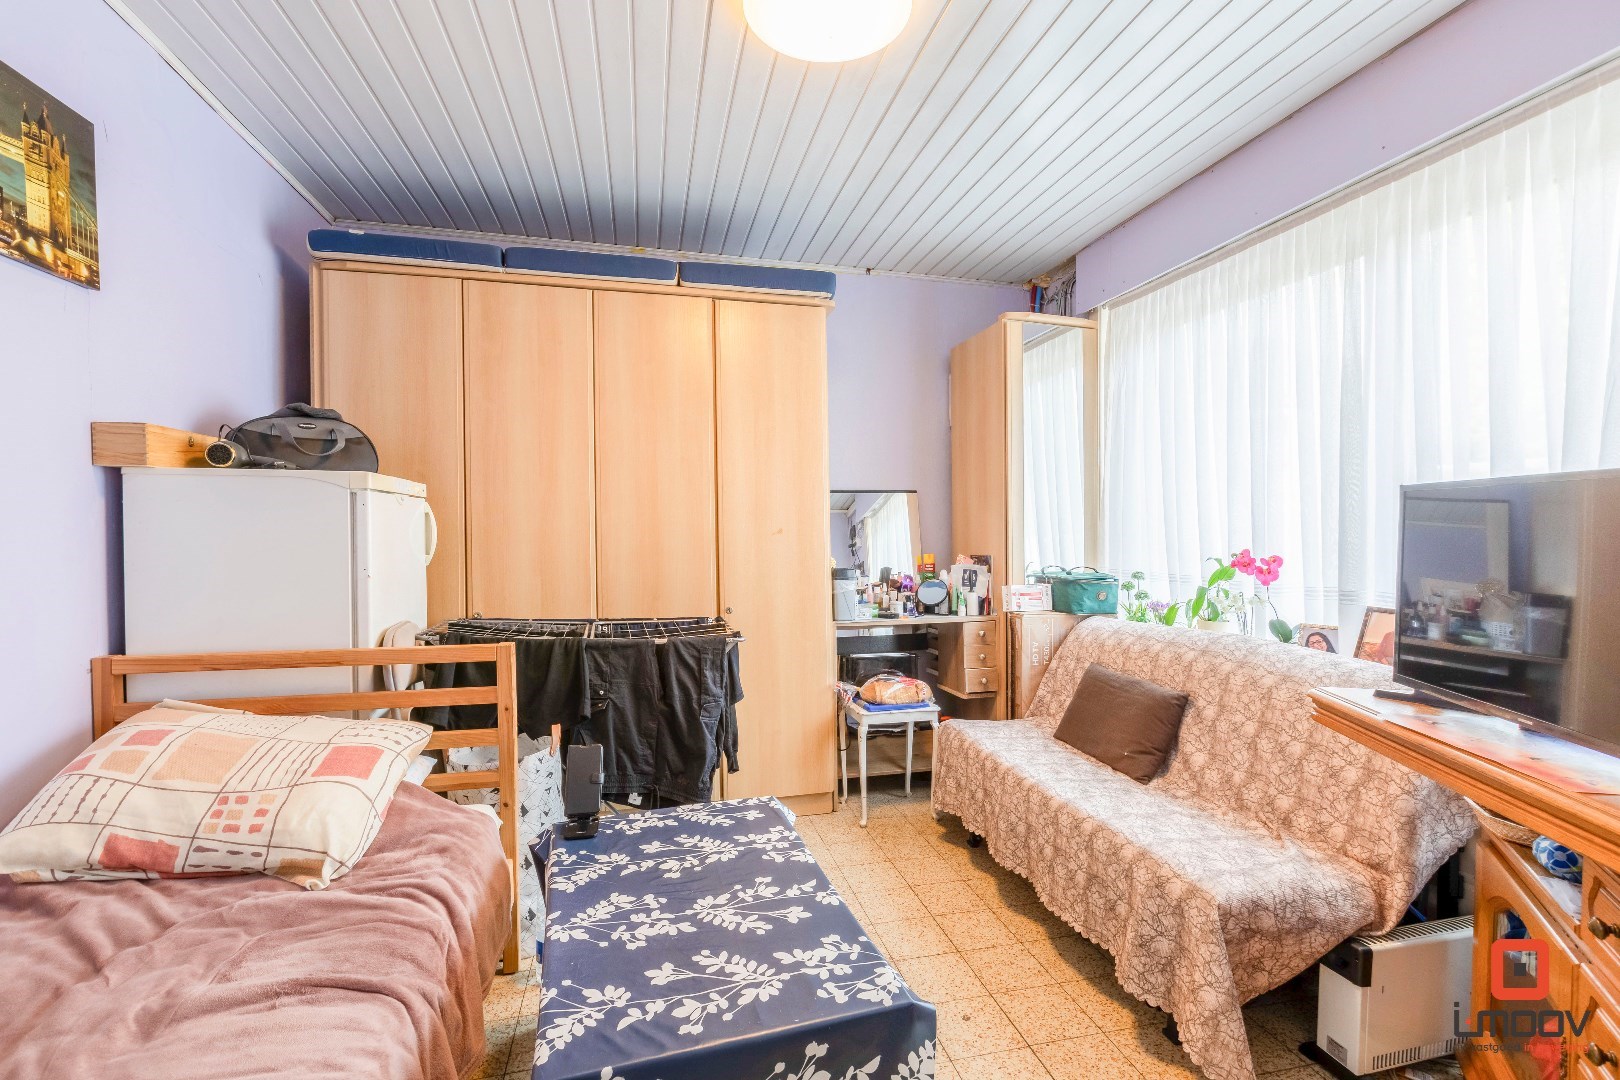 Ruime op te frissen woning in Gent geschikt voor co-housing 